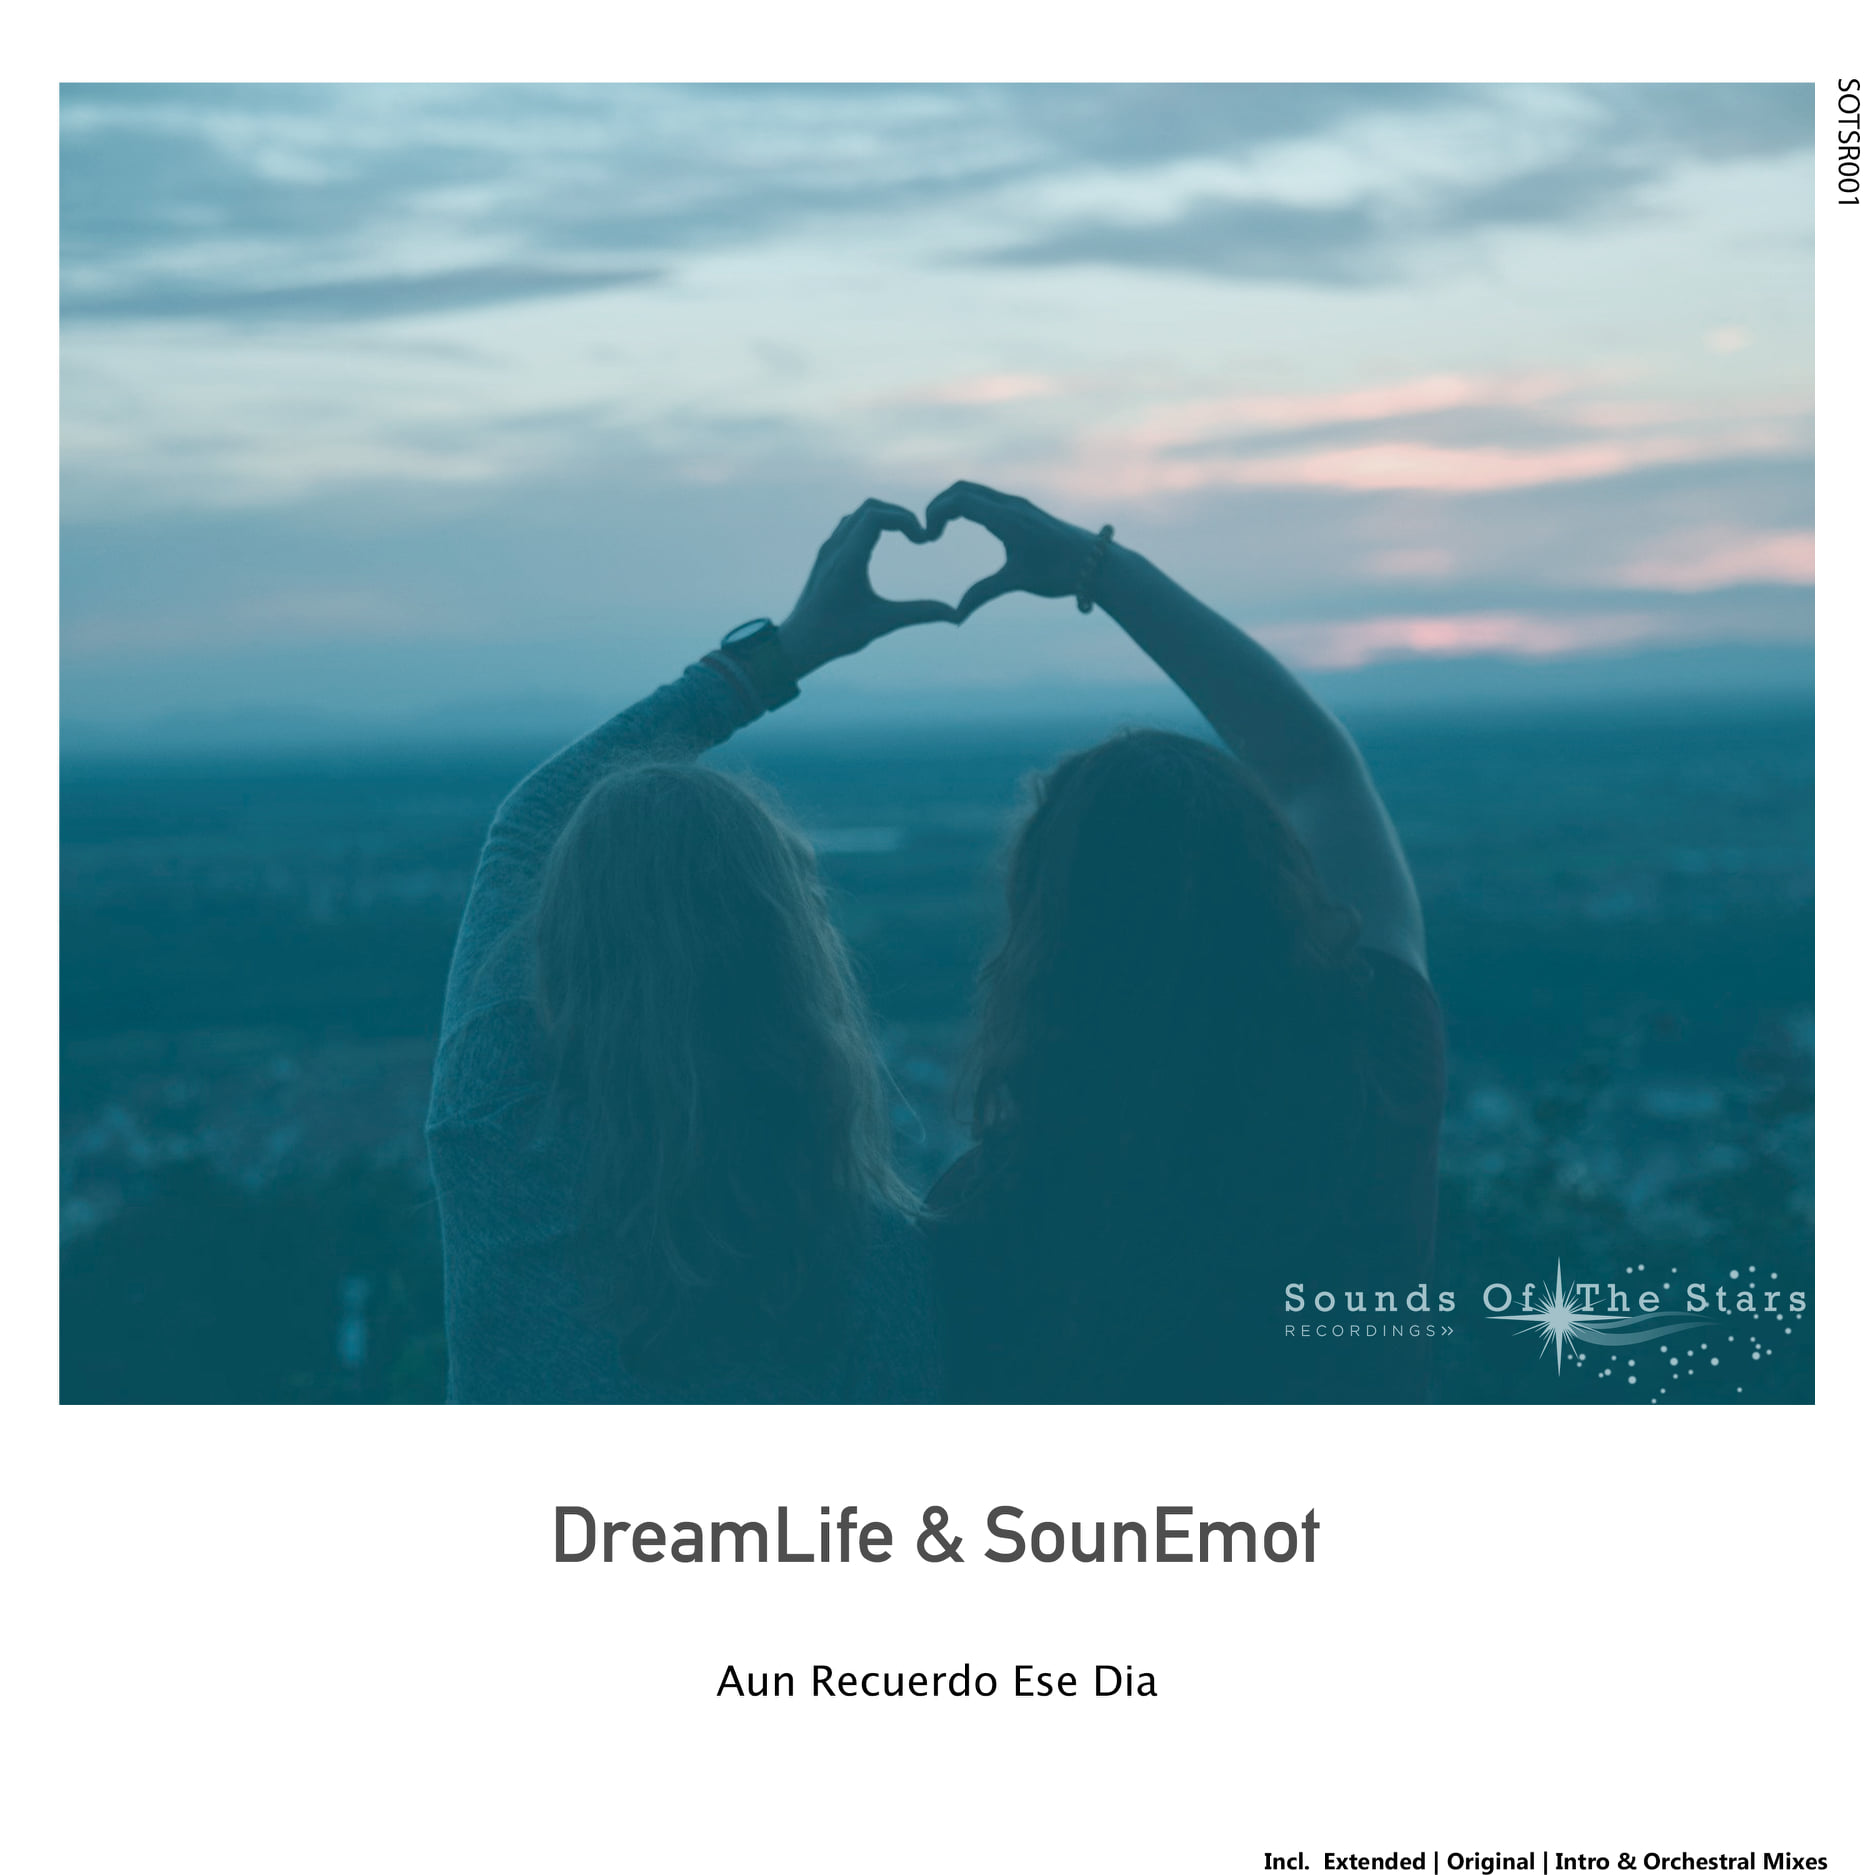 DreamLife & SounEmot - Aun Recuerdo Ese Dia